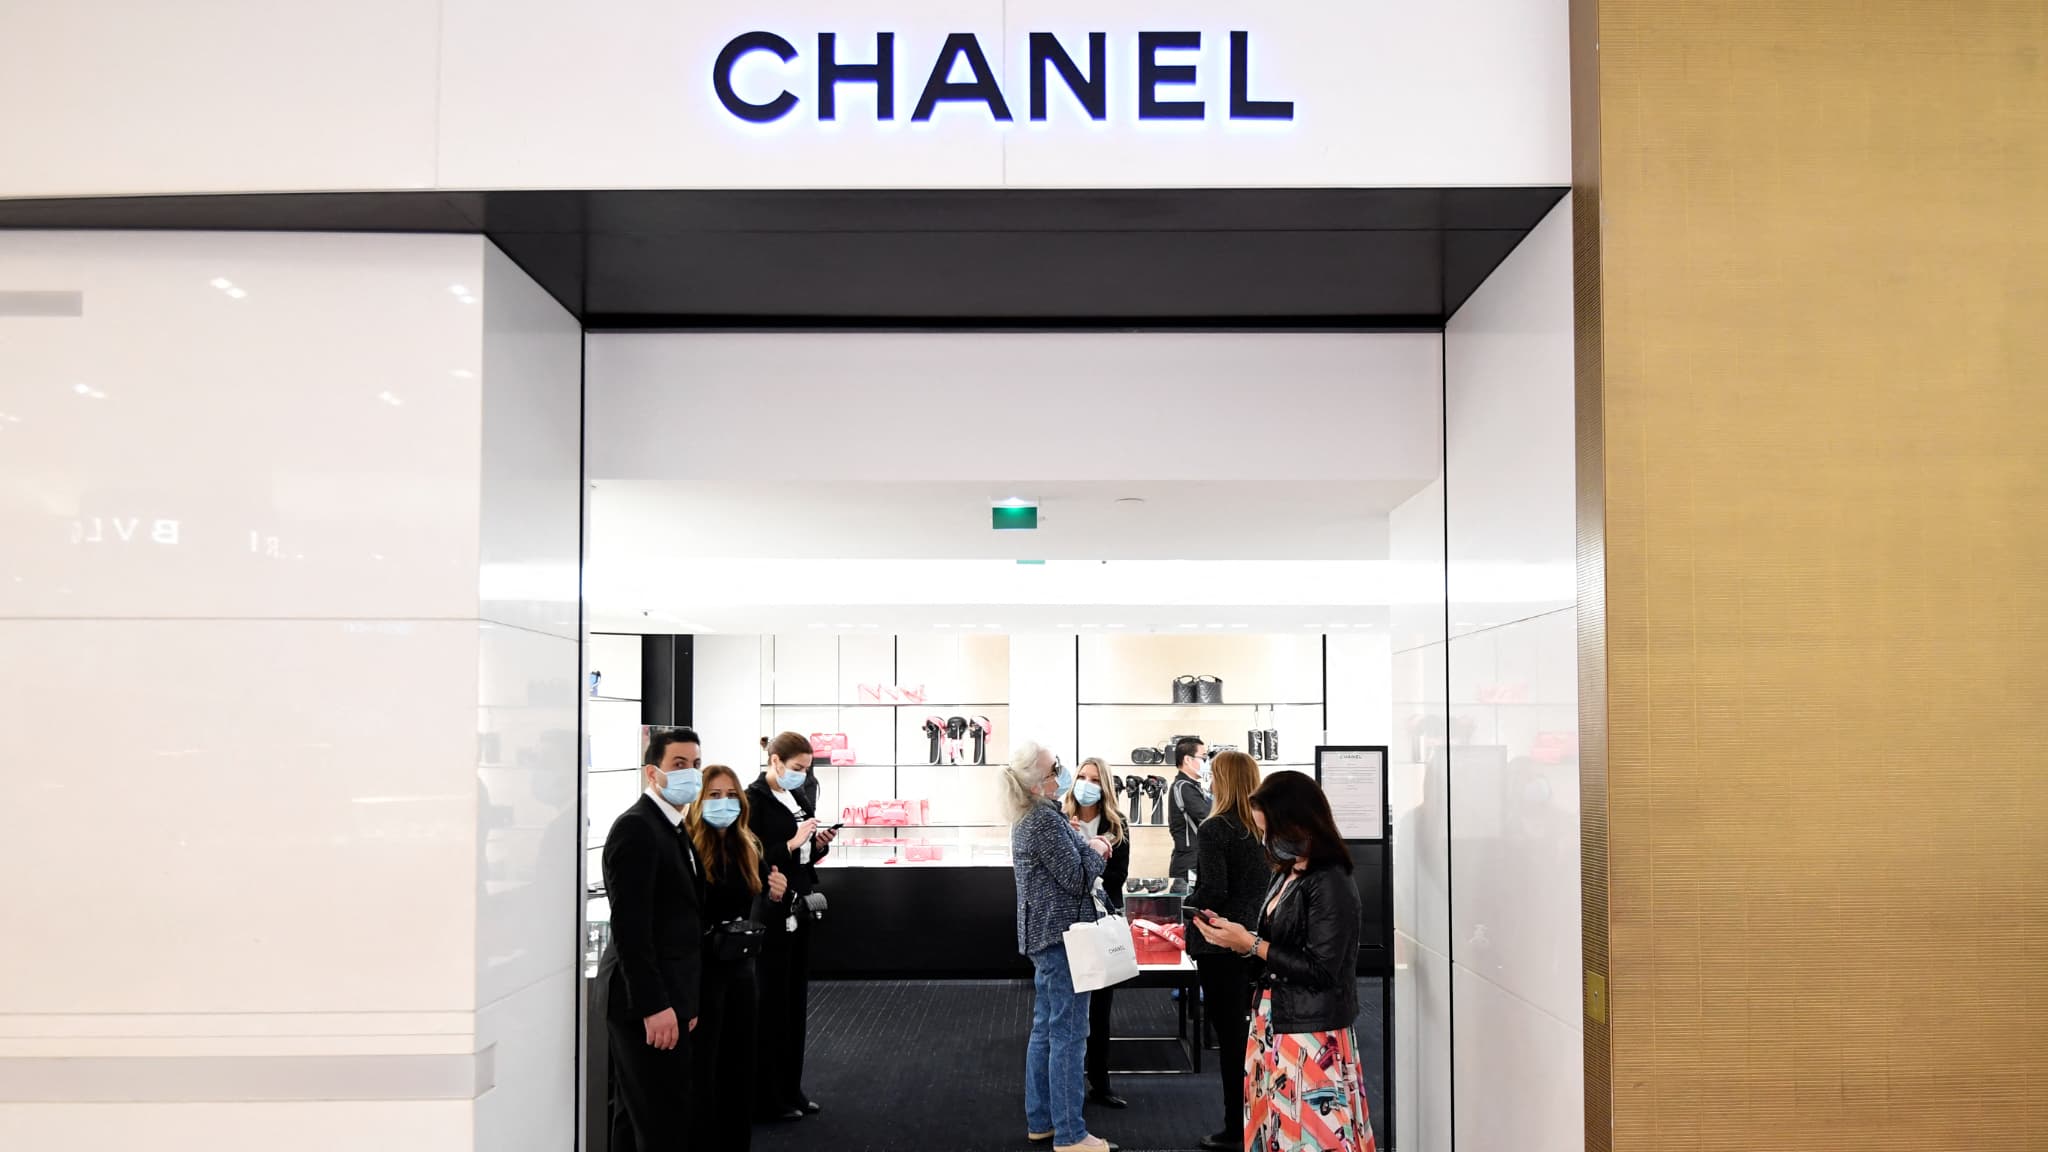 Pourquoi Chanel a augmenté le prix d'un sac de près de 2000 euros en seulement quelques mois